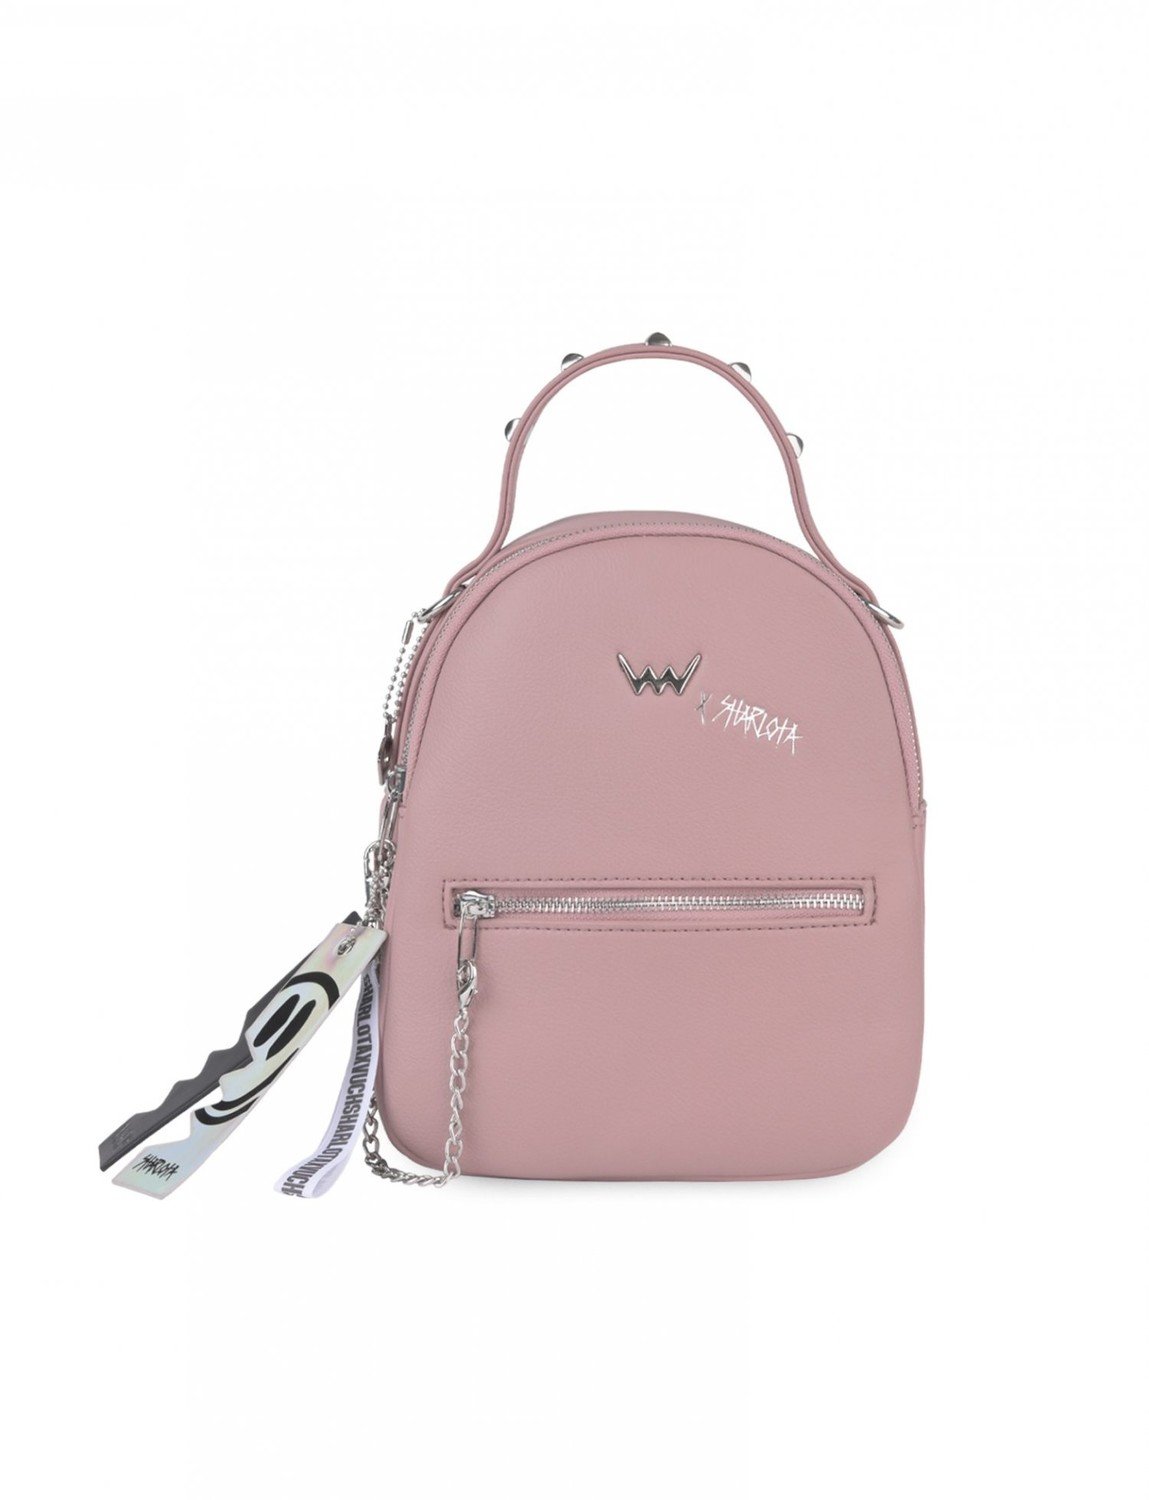 Dámský batůžek kabelka růžový - Vuch WILD ONE ADVENTURE PINK růžová